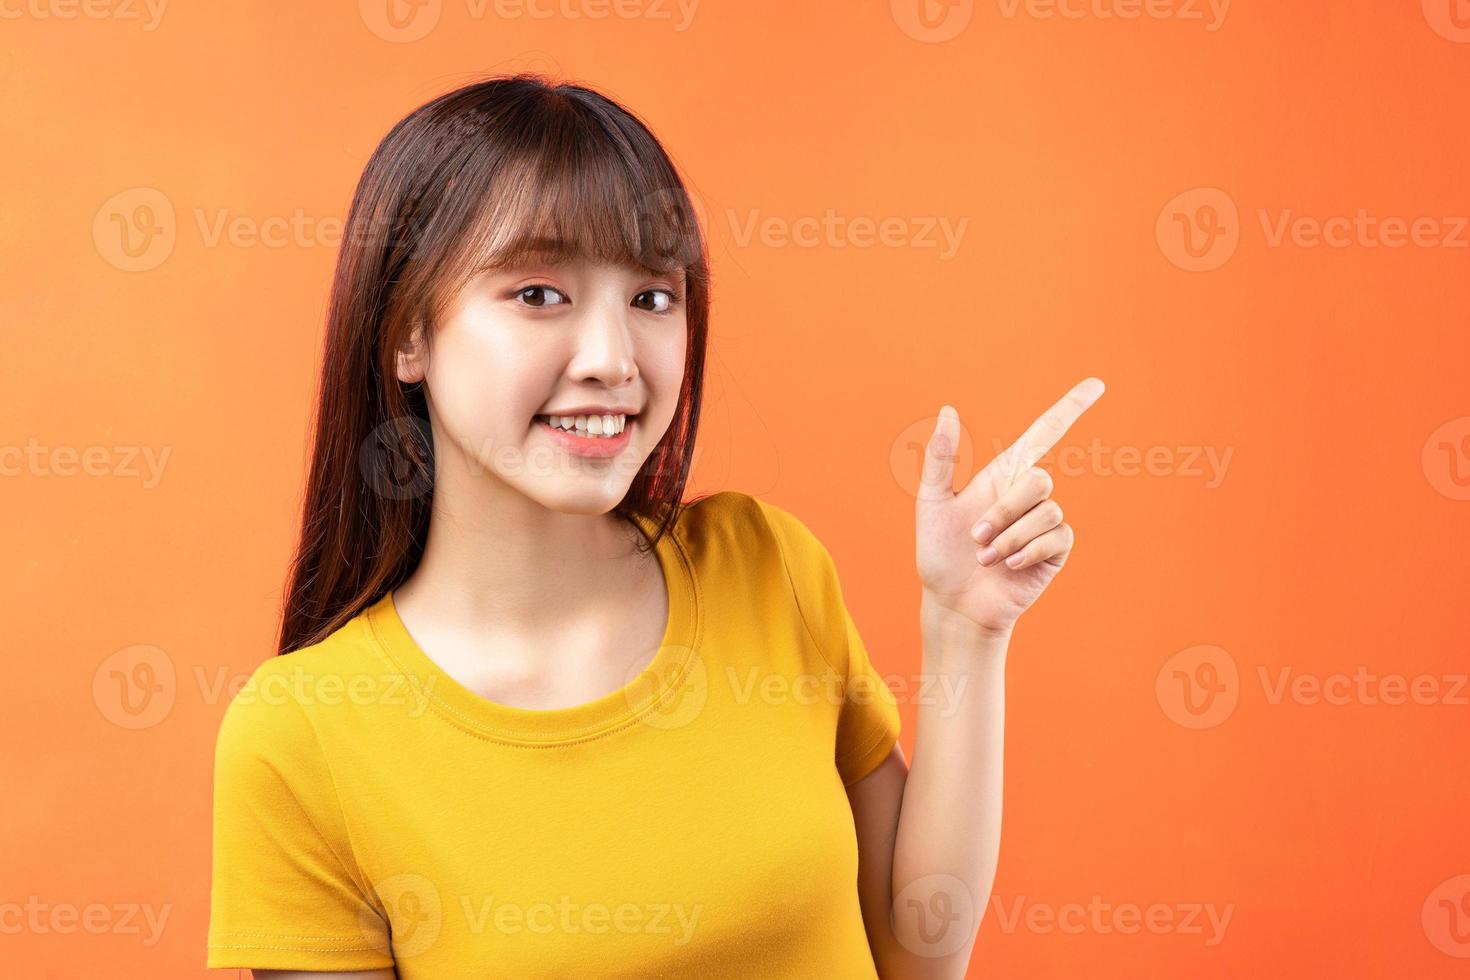 afbeelding van een jong Aziatisch meisje met een geel t-shirt op een oranje achtergrond foto